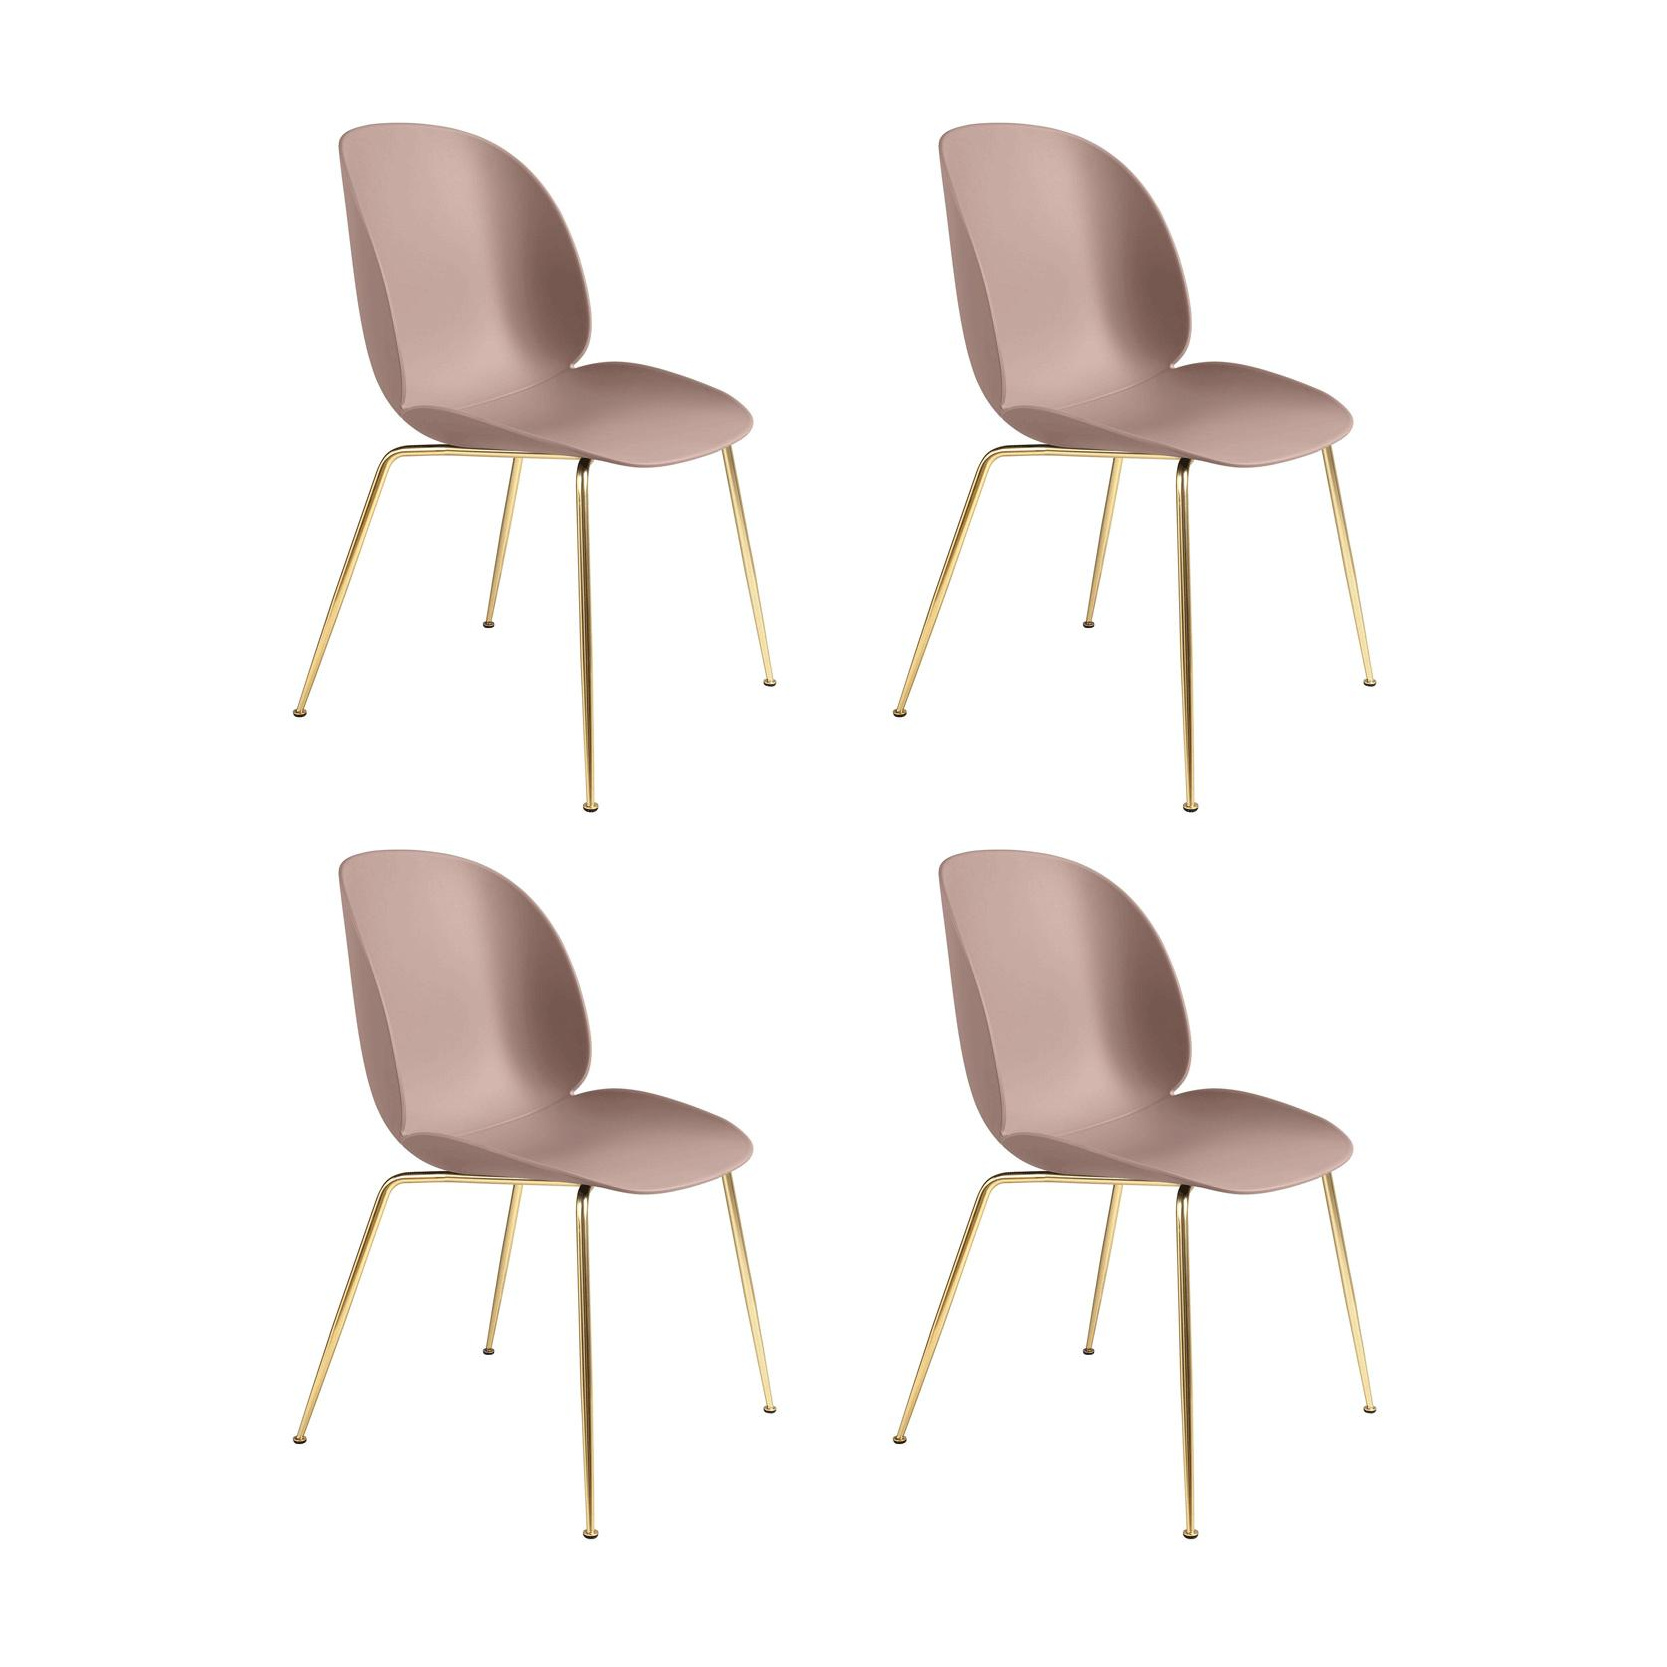 Gubi - Beetle Dining Chair Stuhl Gestell Messing 4er Set - sweet pink/Sitz Polypropylen-Kunststoff/BxHxT 56x87x58cm/Gestell Messing/Kunststoffgleiter von Gubi